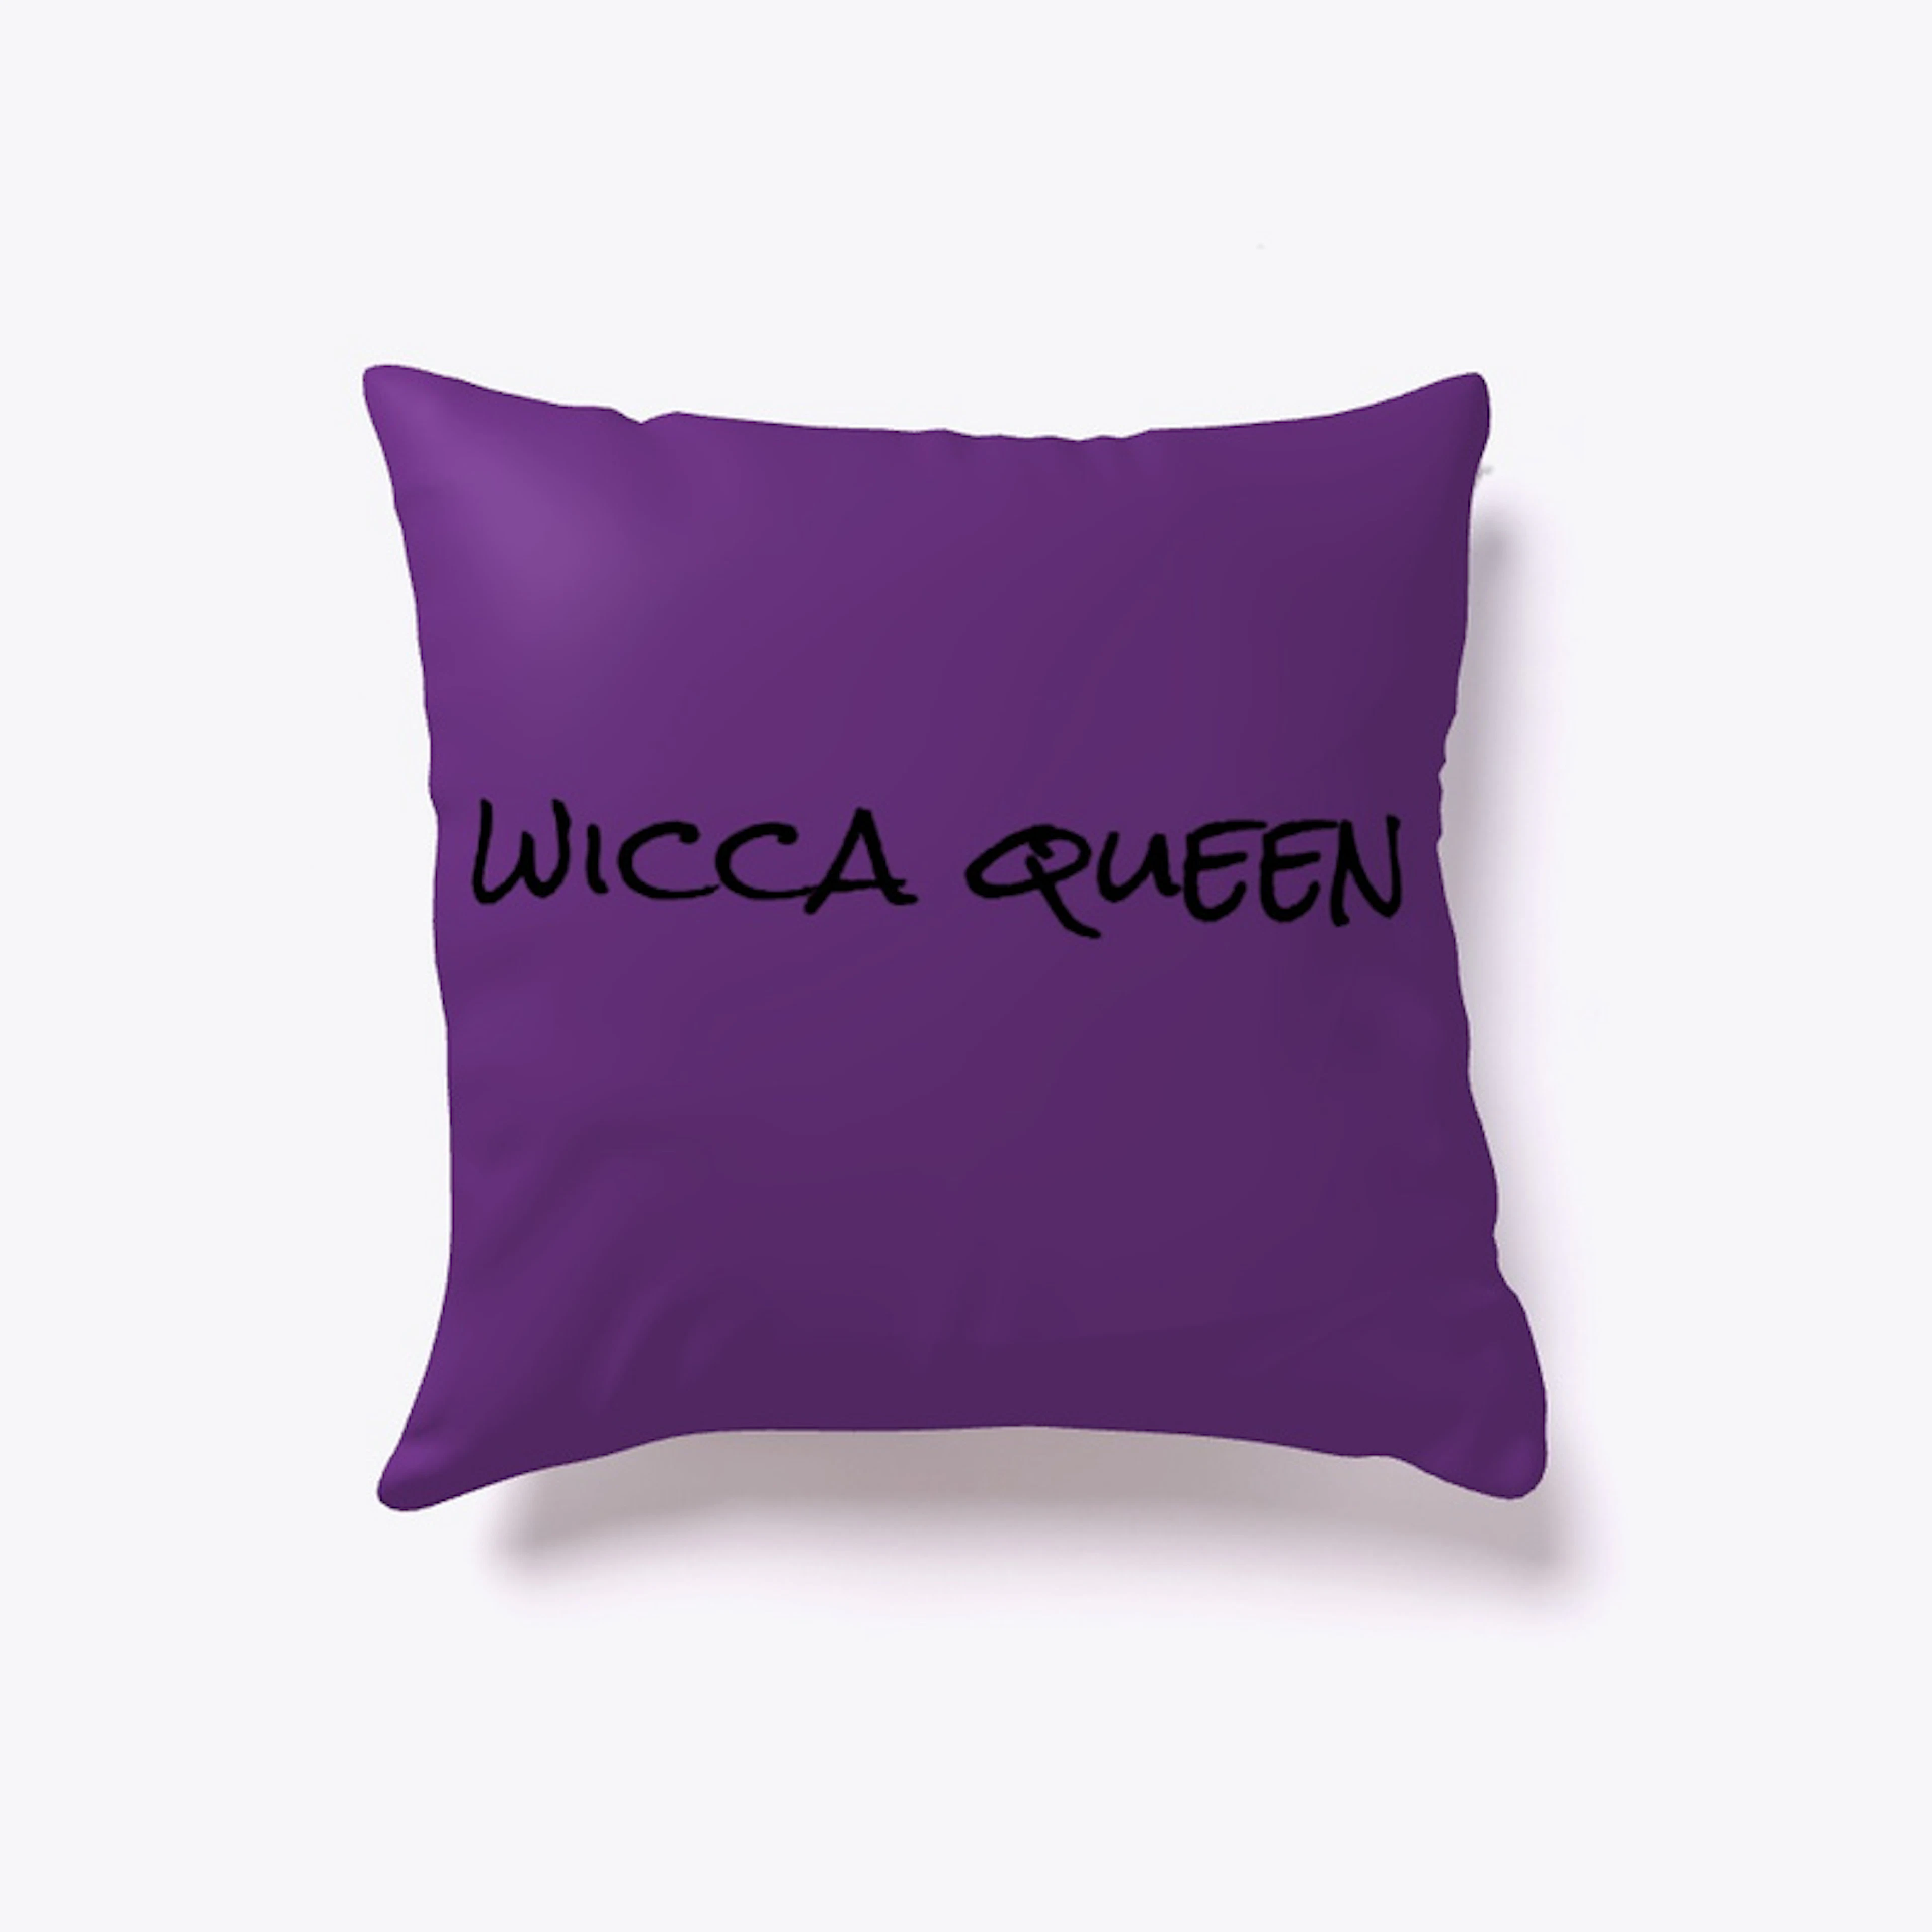 wicca queen